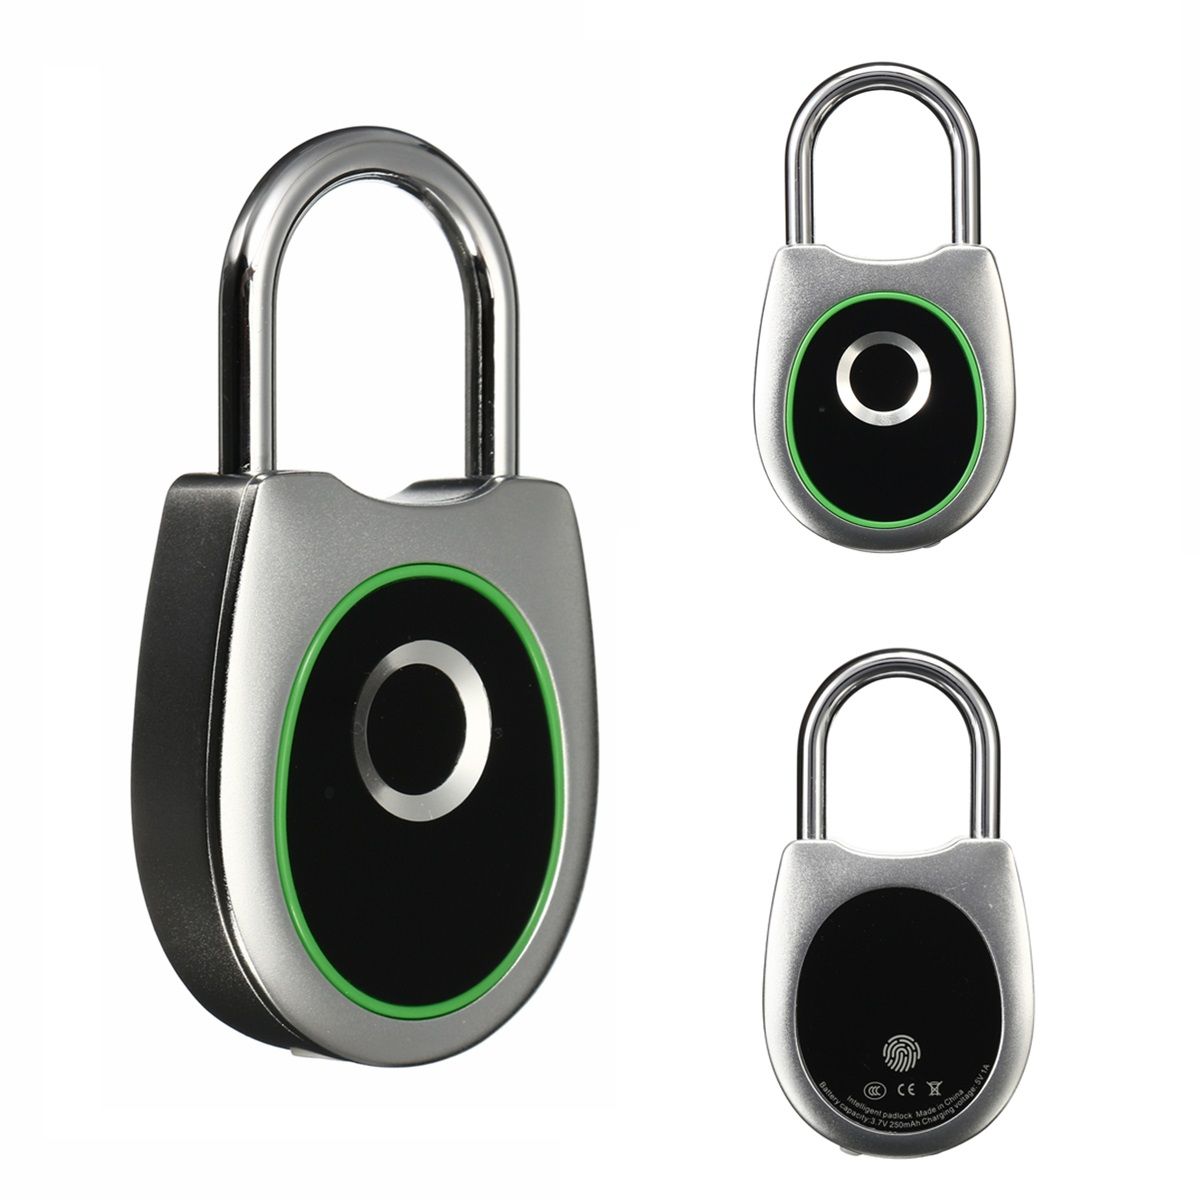 Smart-USB-Charging-Fingerprint-Lock-Anti-Theft-Keyless-Lock-Fingerprint-Padlock-Waterproof-1527916